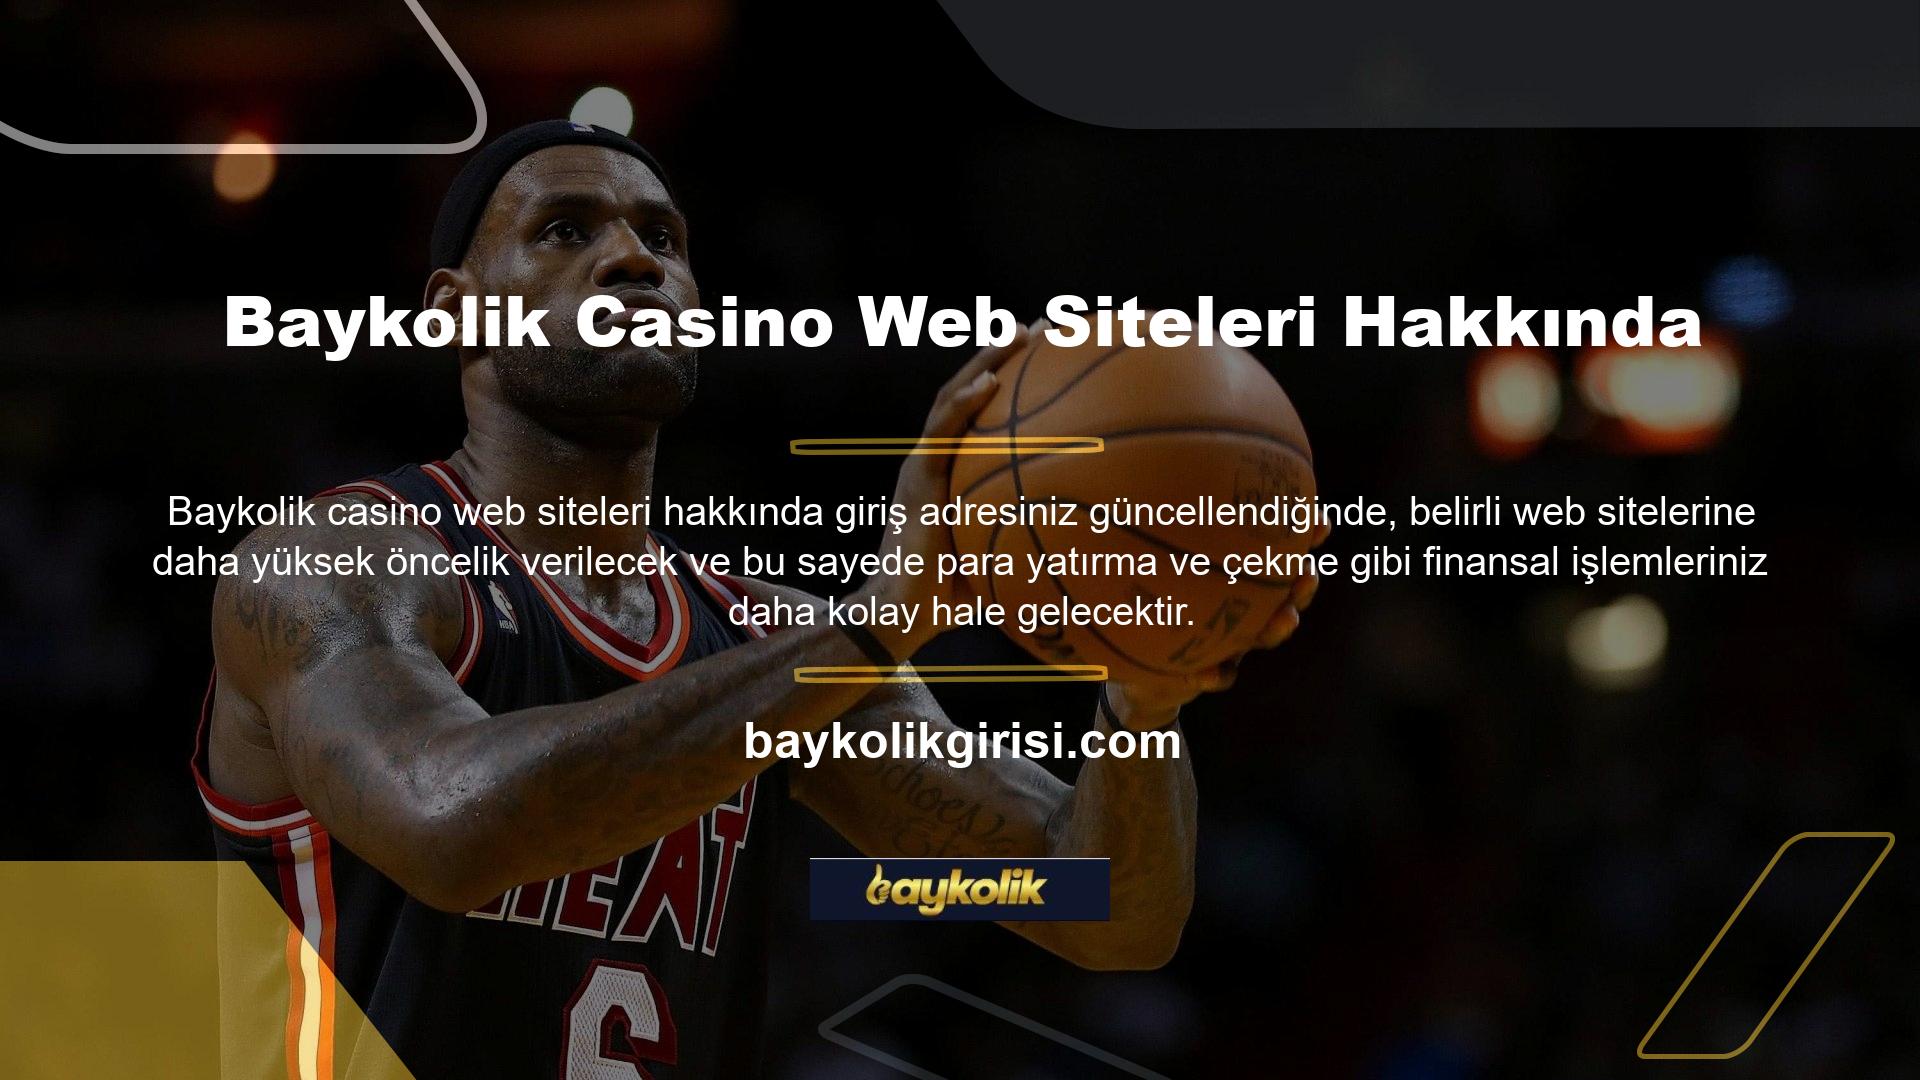 Ülkemizde casino pazarına hizmet veren Baykolik Casino web sitesi ile ilgili yasal bir web sitesi bulunmamaktadır